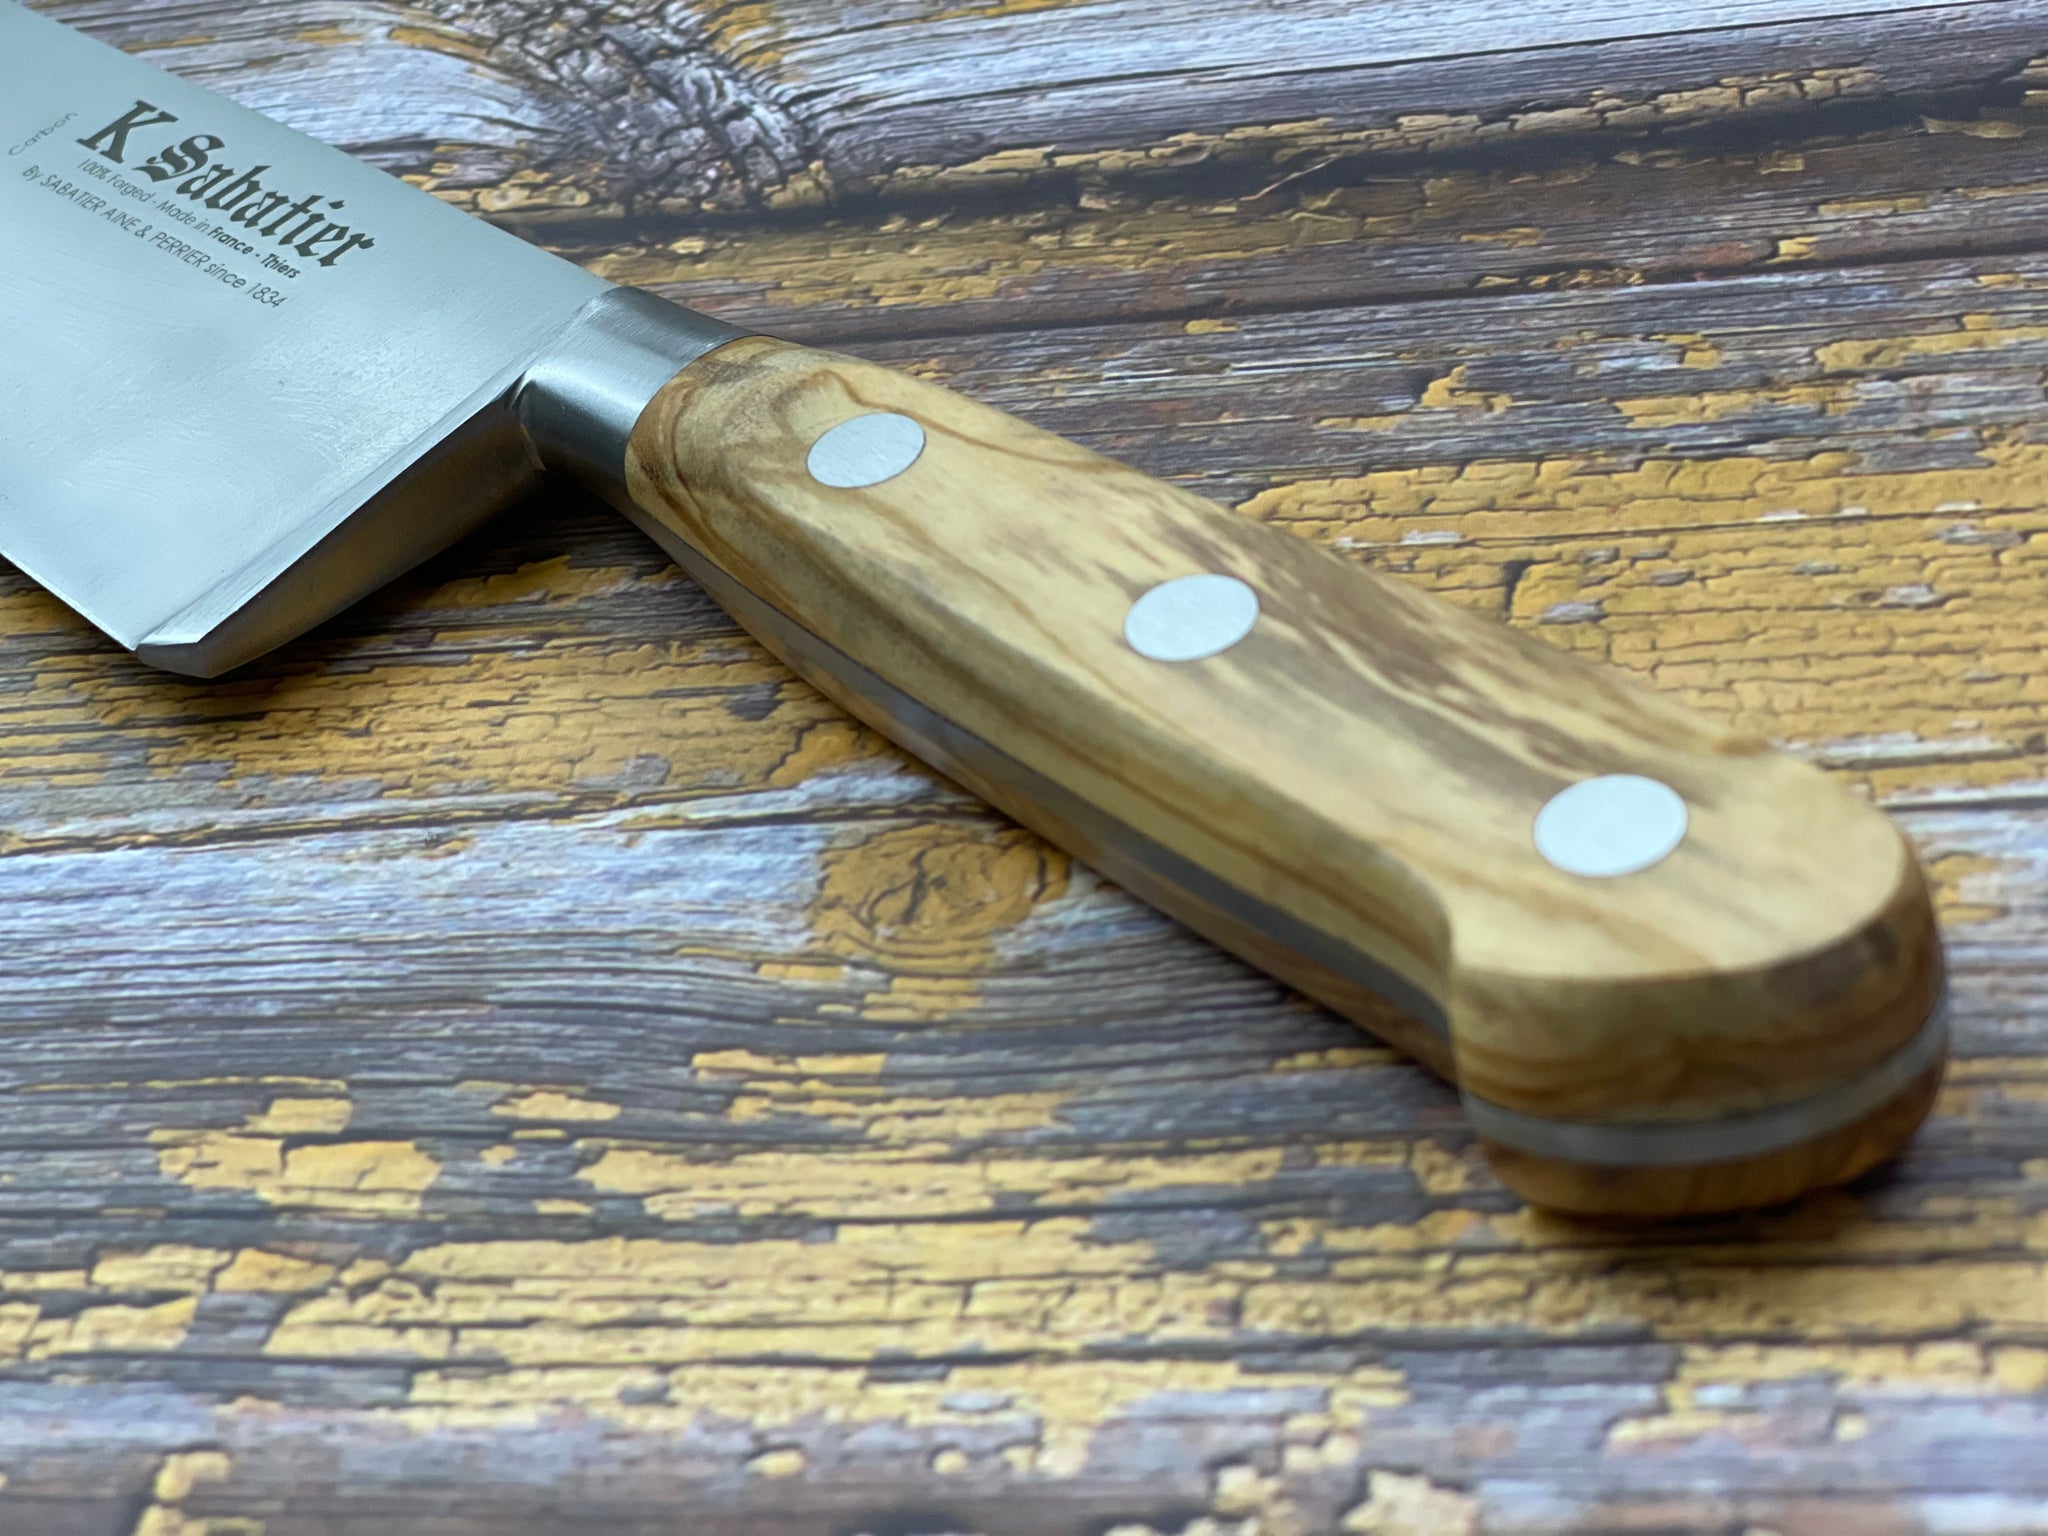 K Sabatier Chef Knife 230mm - CARBON STEEL - OLIVE WOOD HANDLE